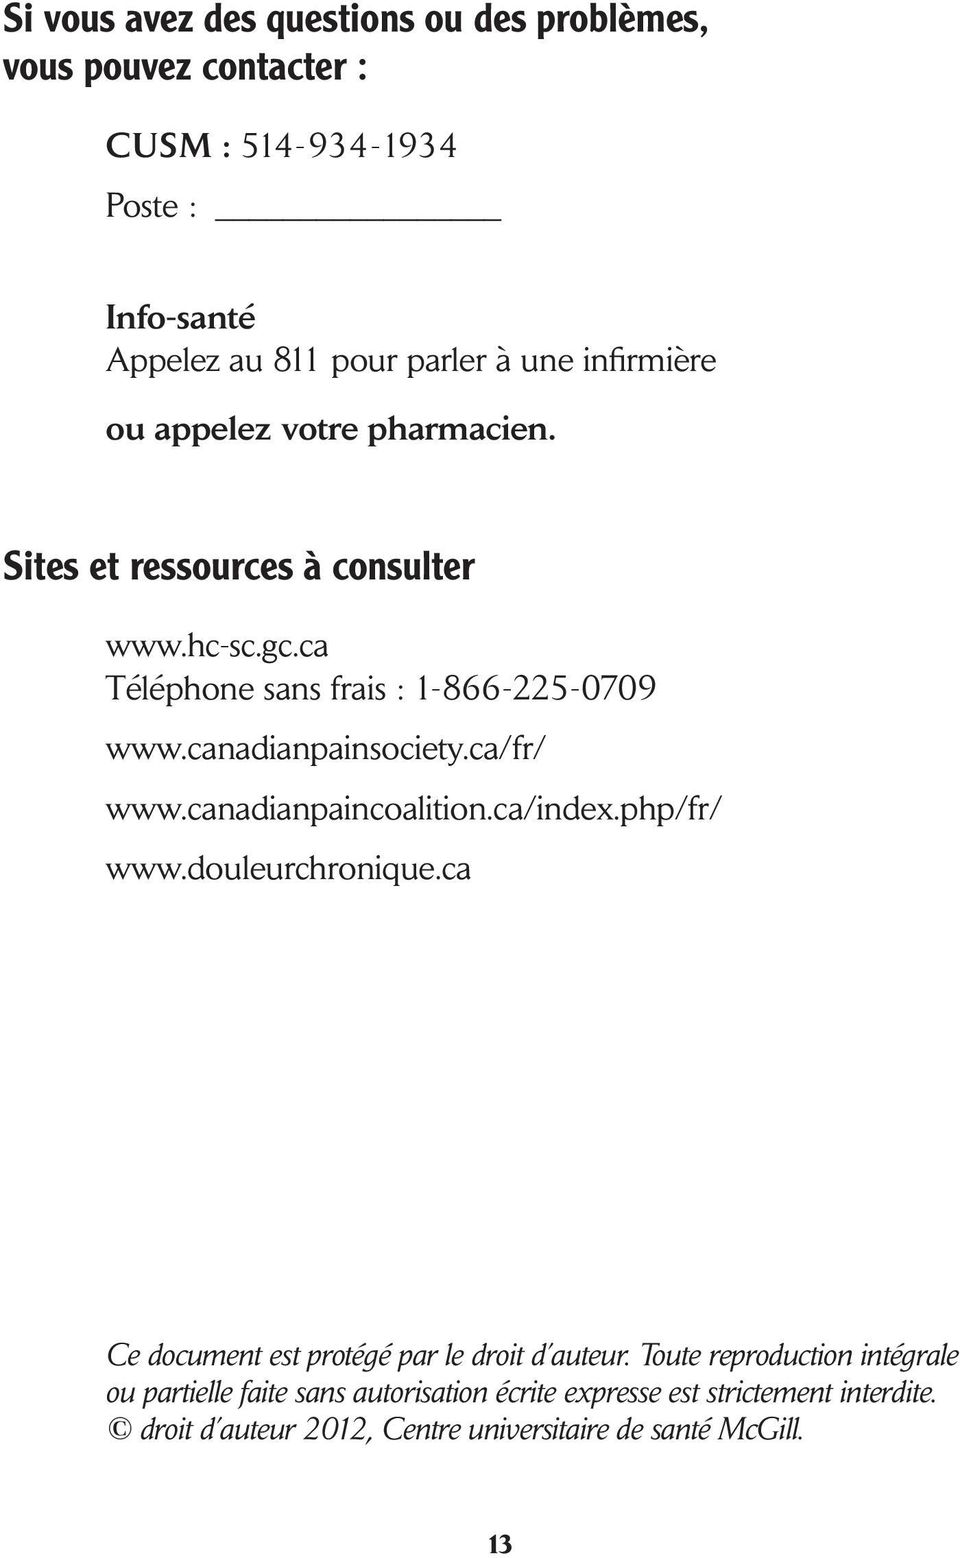 canadianpainsociety.ca/fr/ www.canadianpaincoalition.ca/index.php/fr/ www.douleurchronique.ca Ce document est protégé par le droit d auteur.